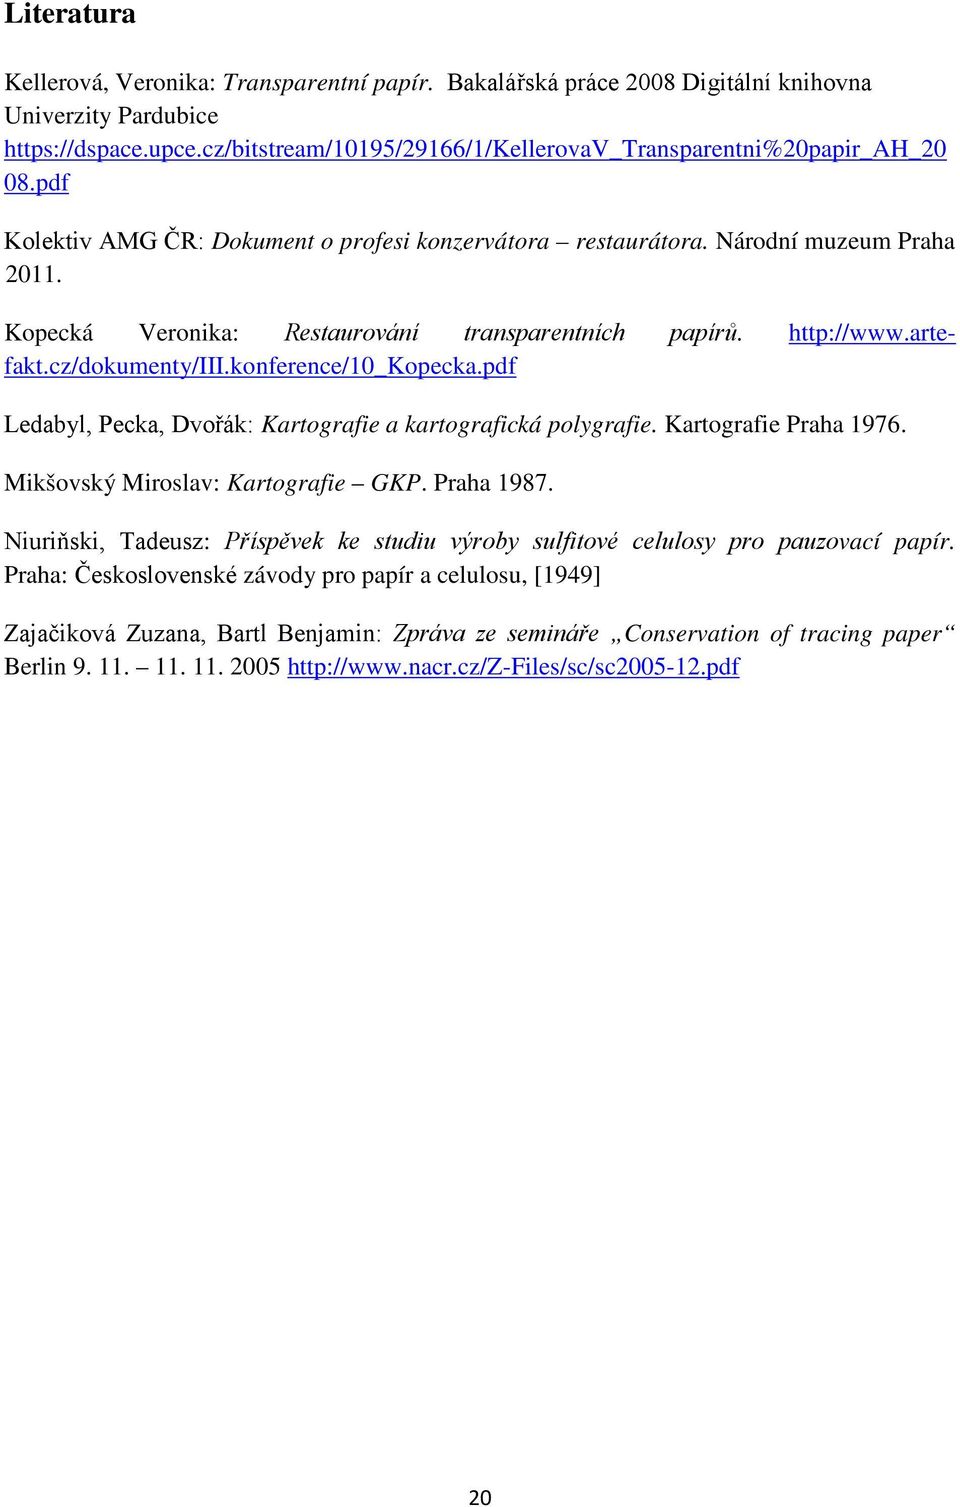 Kopecká Veronika: Restaurování transparentních papírů. http://www.artefakt.cz/dokumenty/iii.konference/10_kopecka.pdf Ledabyl, Pecka, Dvořák: Kartografie a kartografická polygrafie.